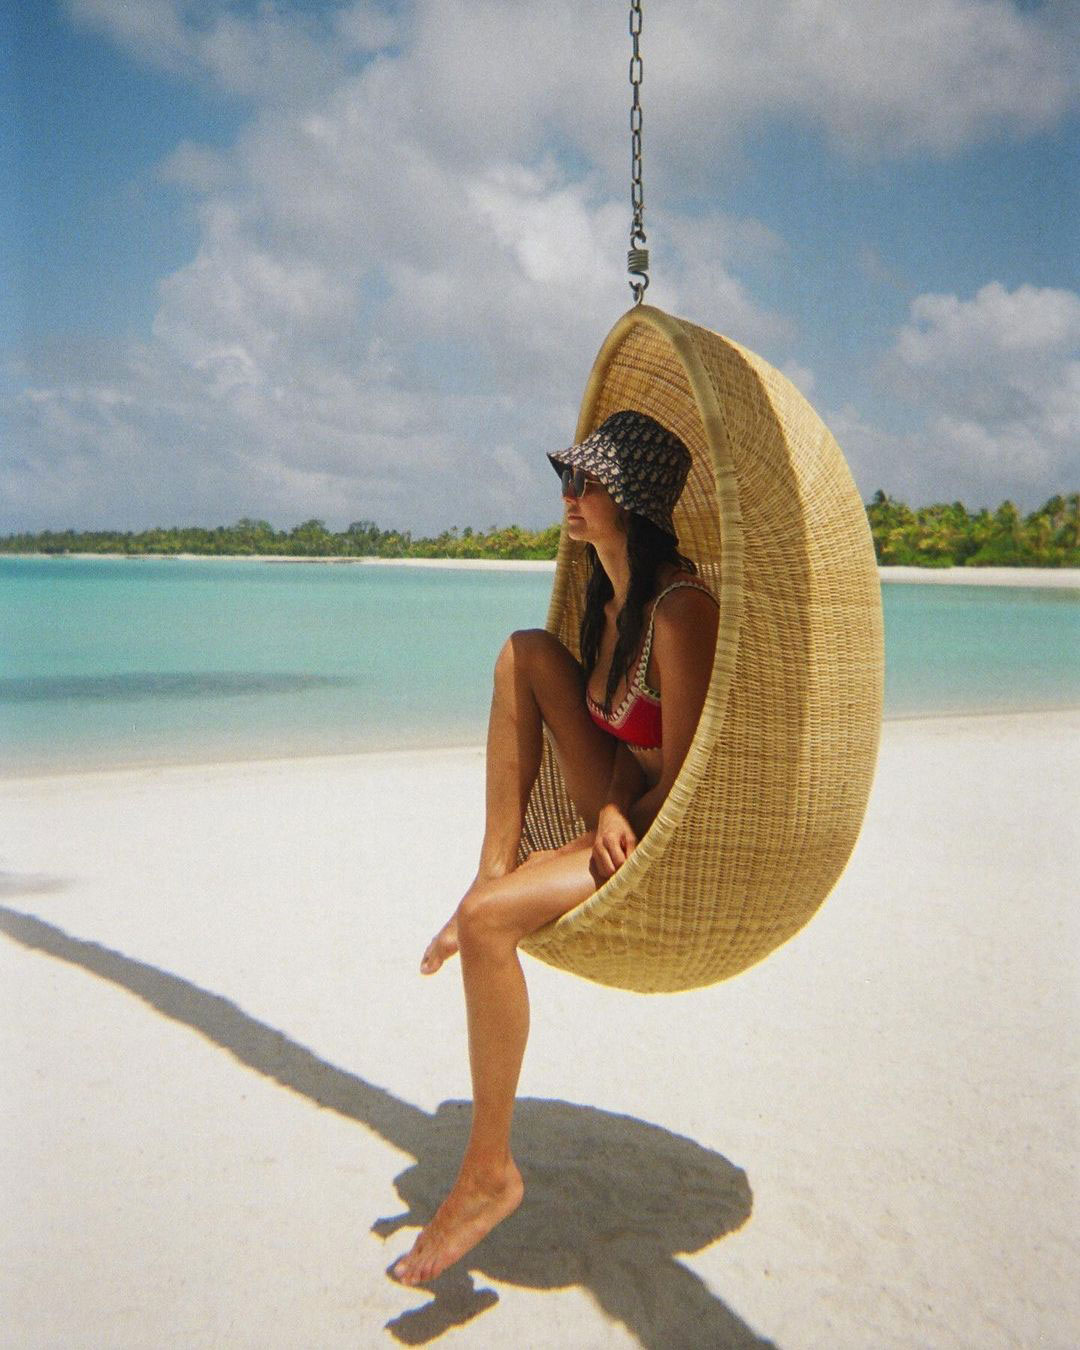 Photos from Nina Dobrev and Shaun White's Vacation To The Maldives